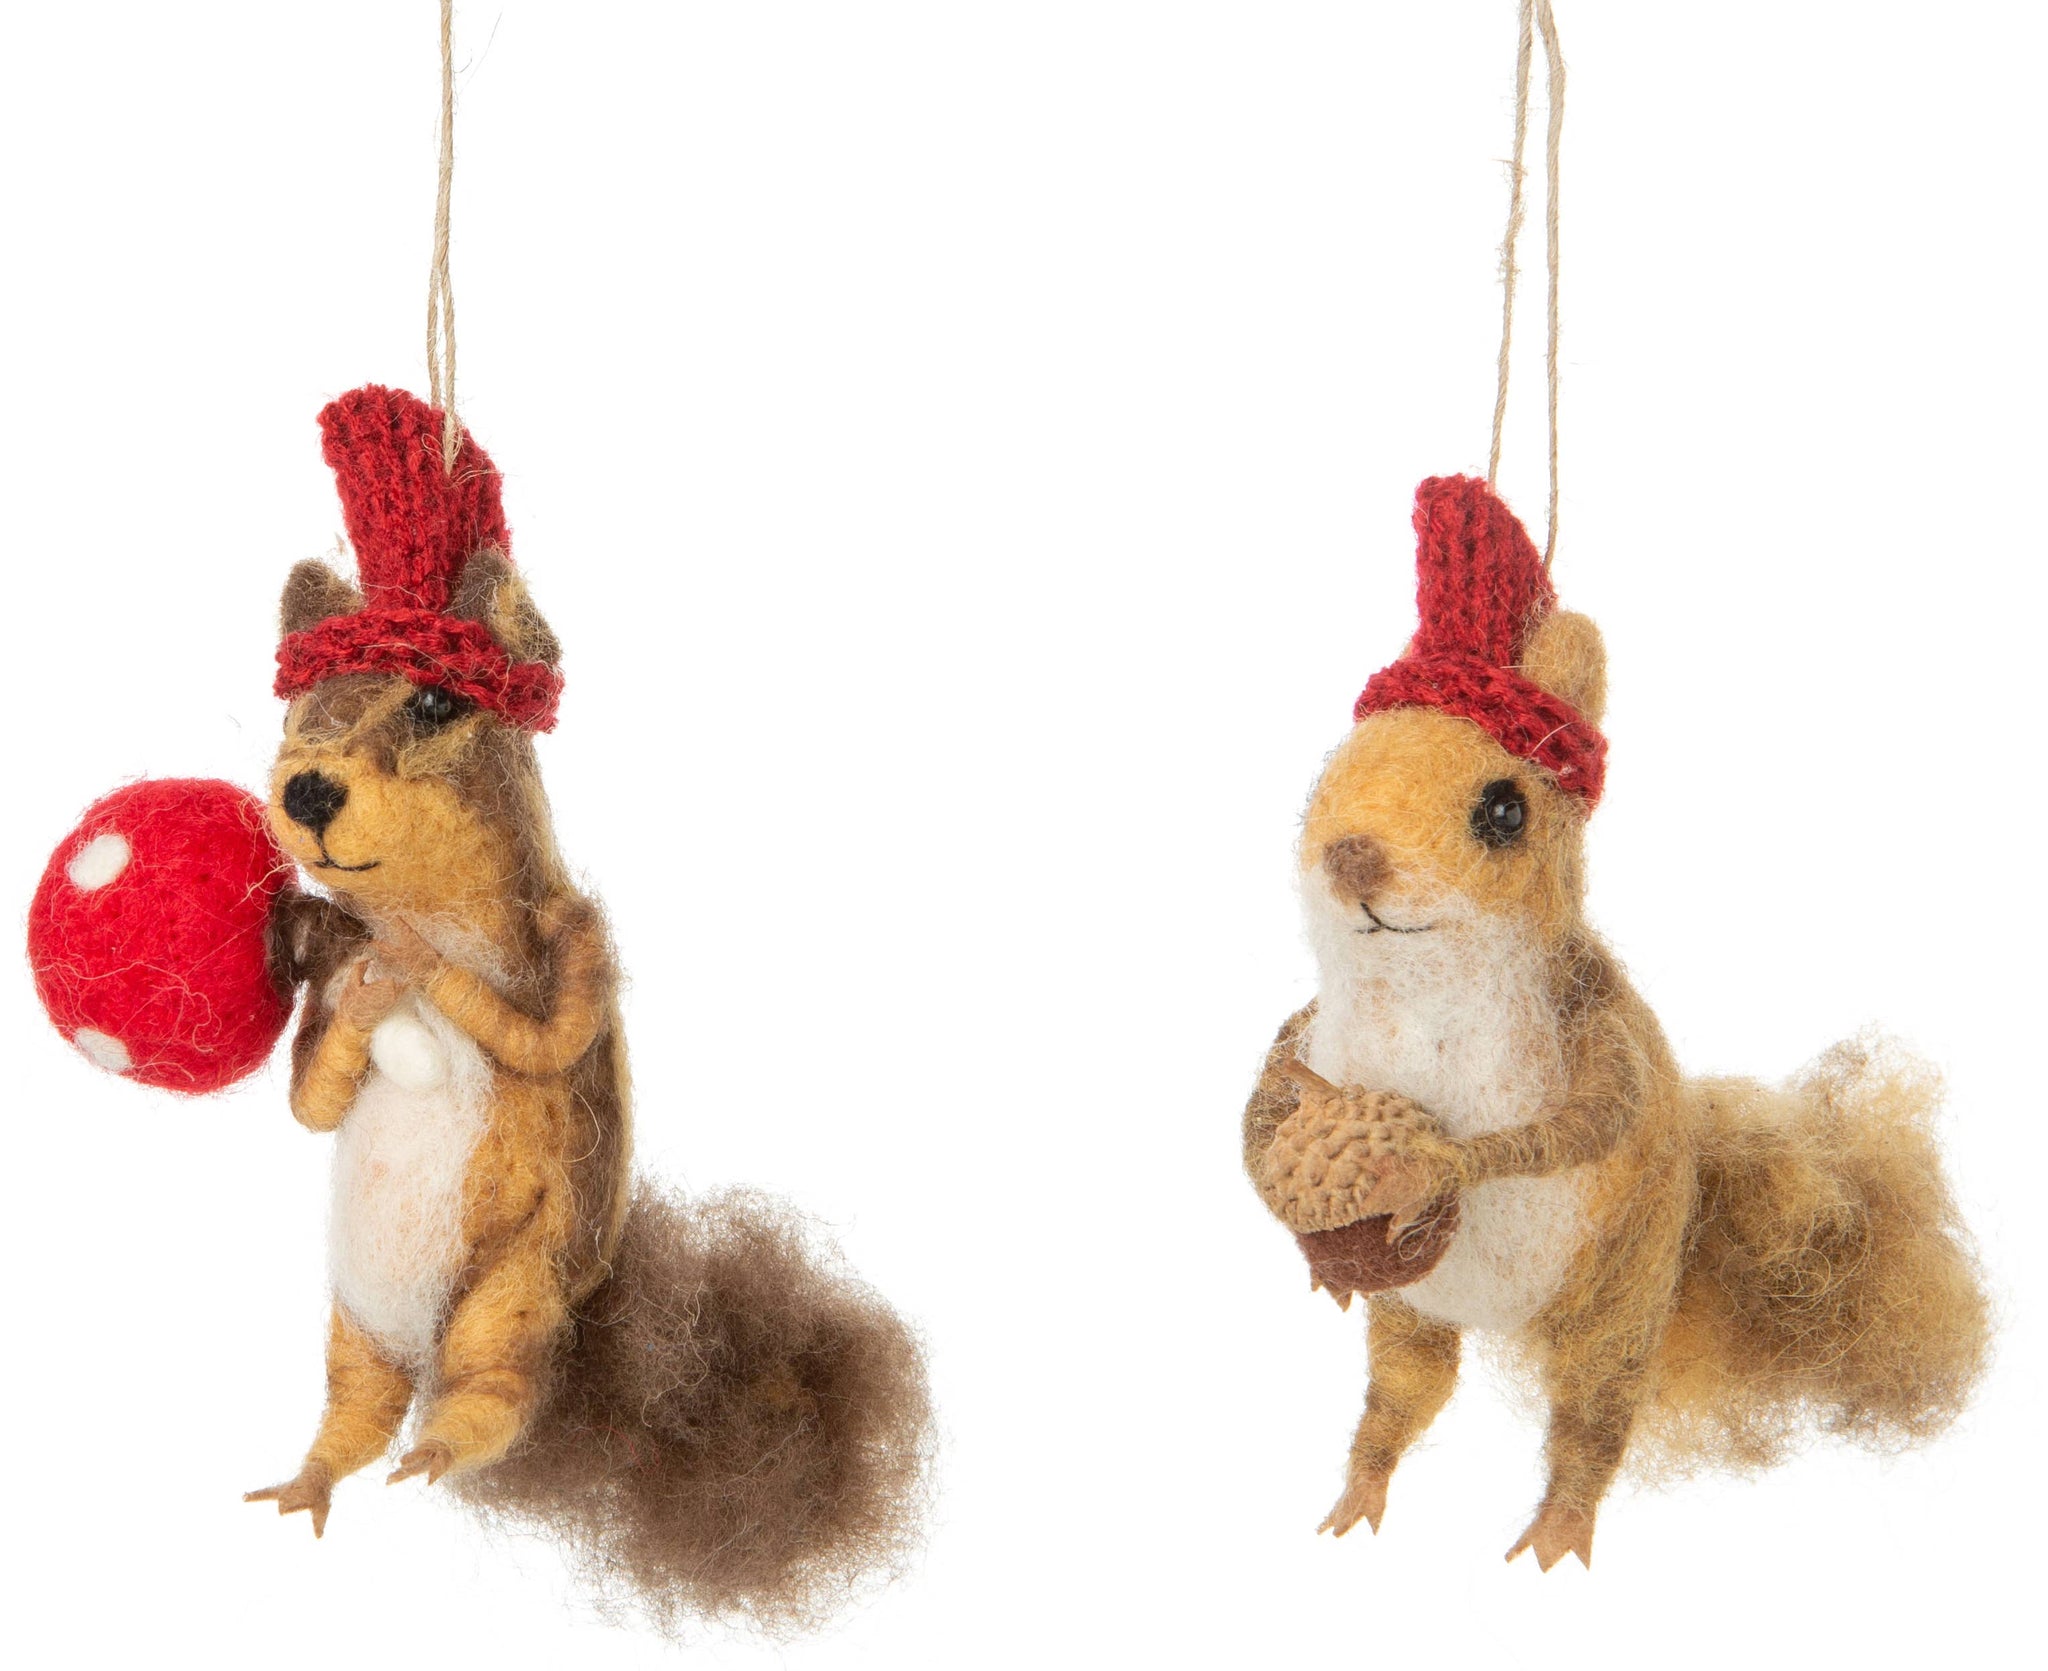 Felt Squirrel Ornaments